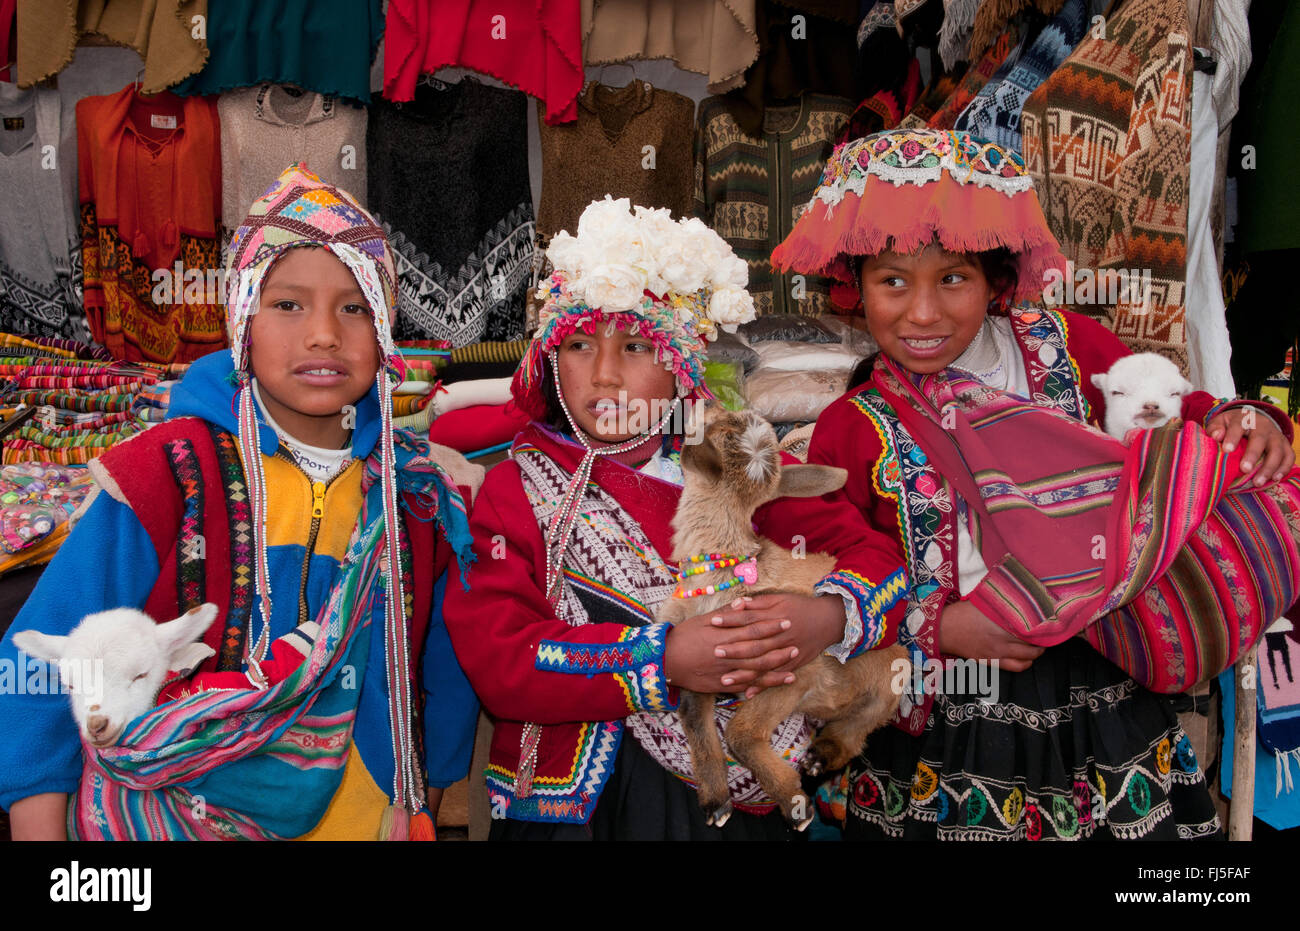 Bambini peruviani immagini e fotografie stock ad alta risoluzione - Alamy